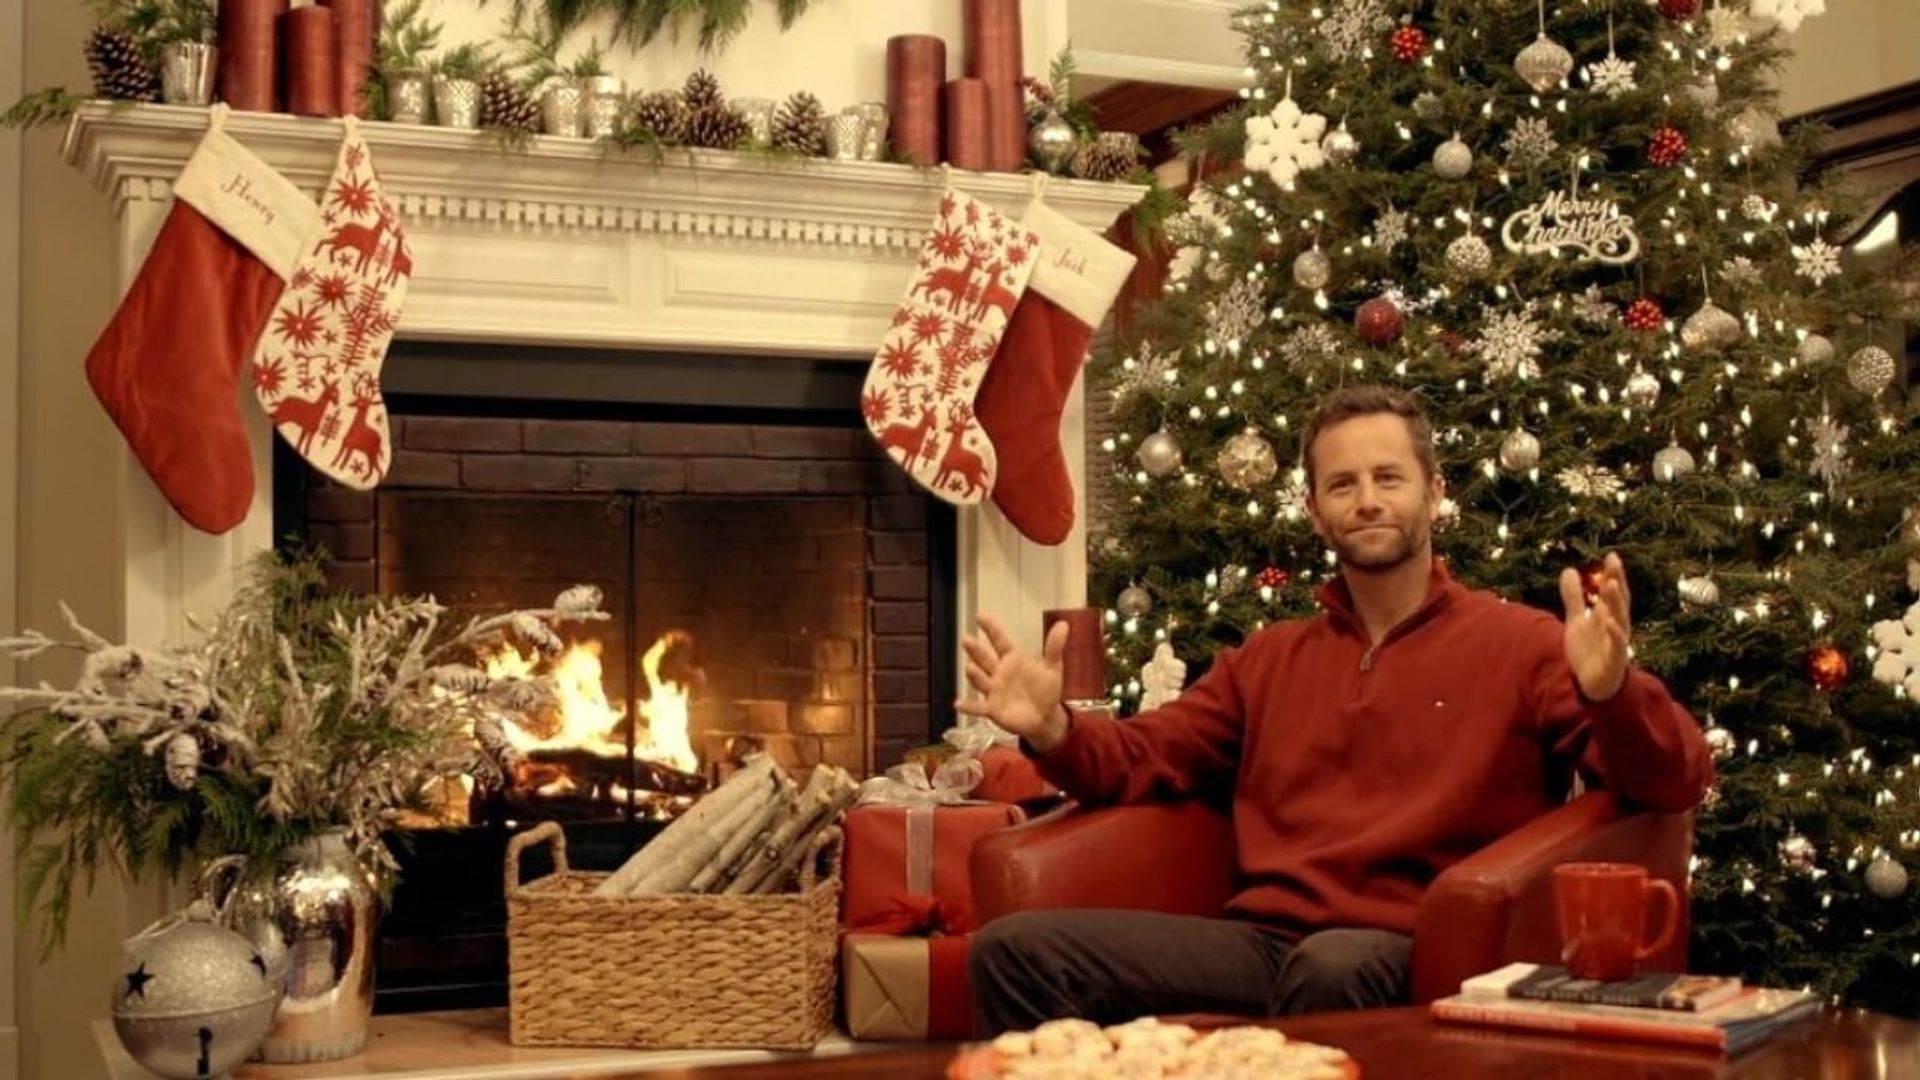 Kirk Cameron's Saving Christmas background